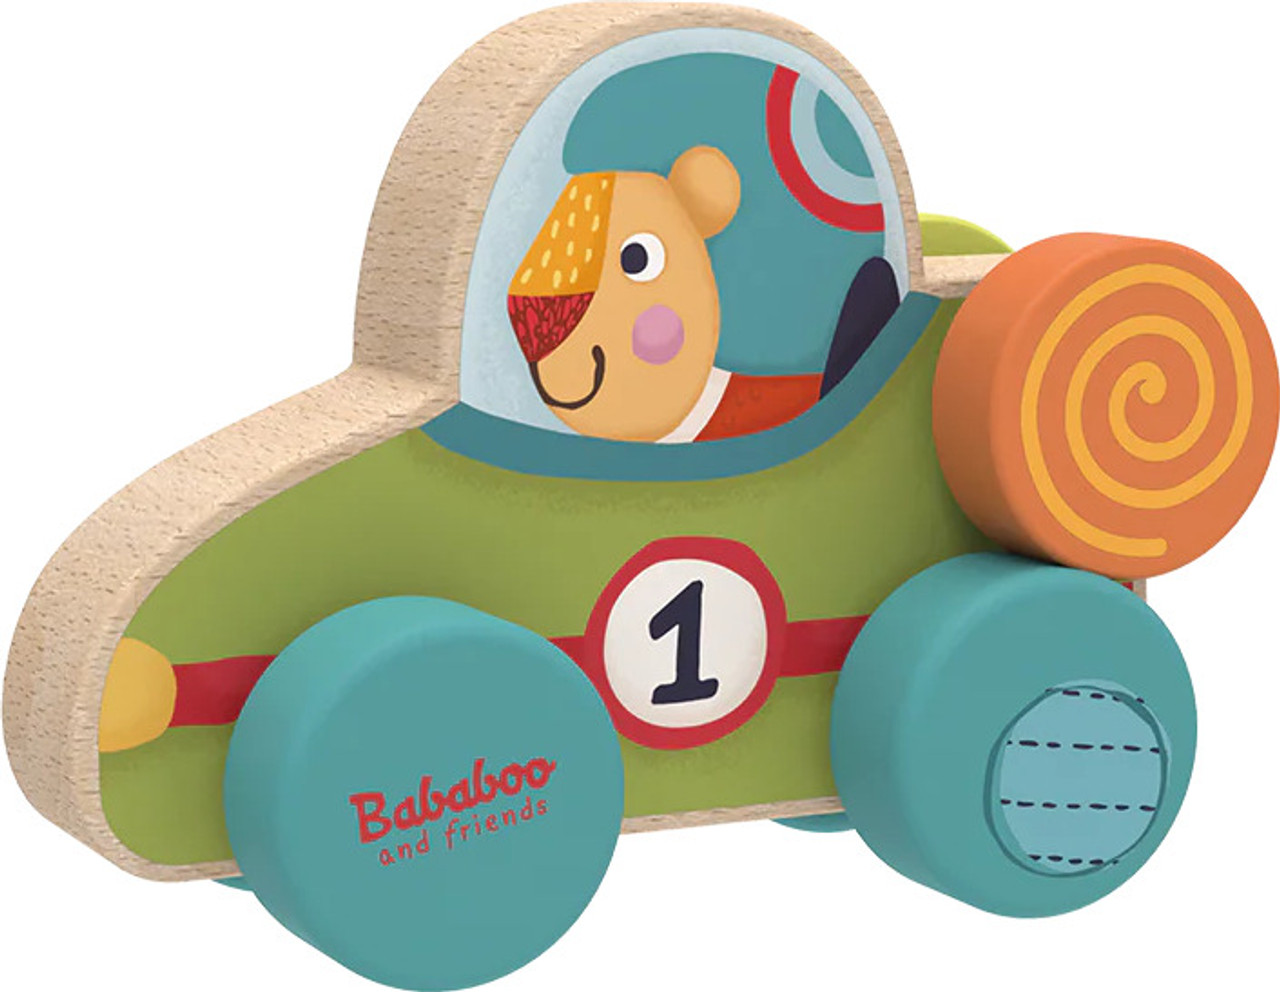 Bababoo's Racecar  2